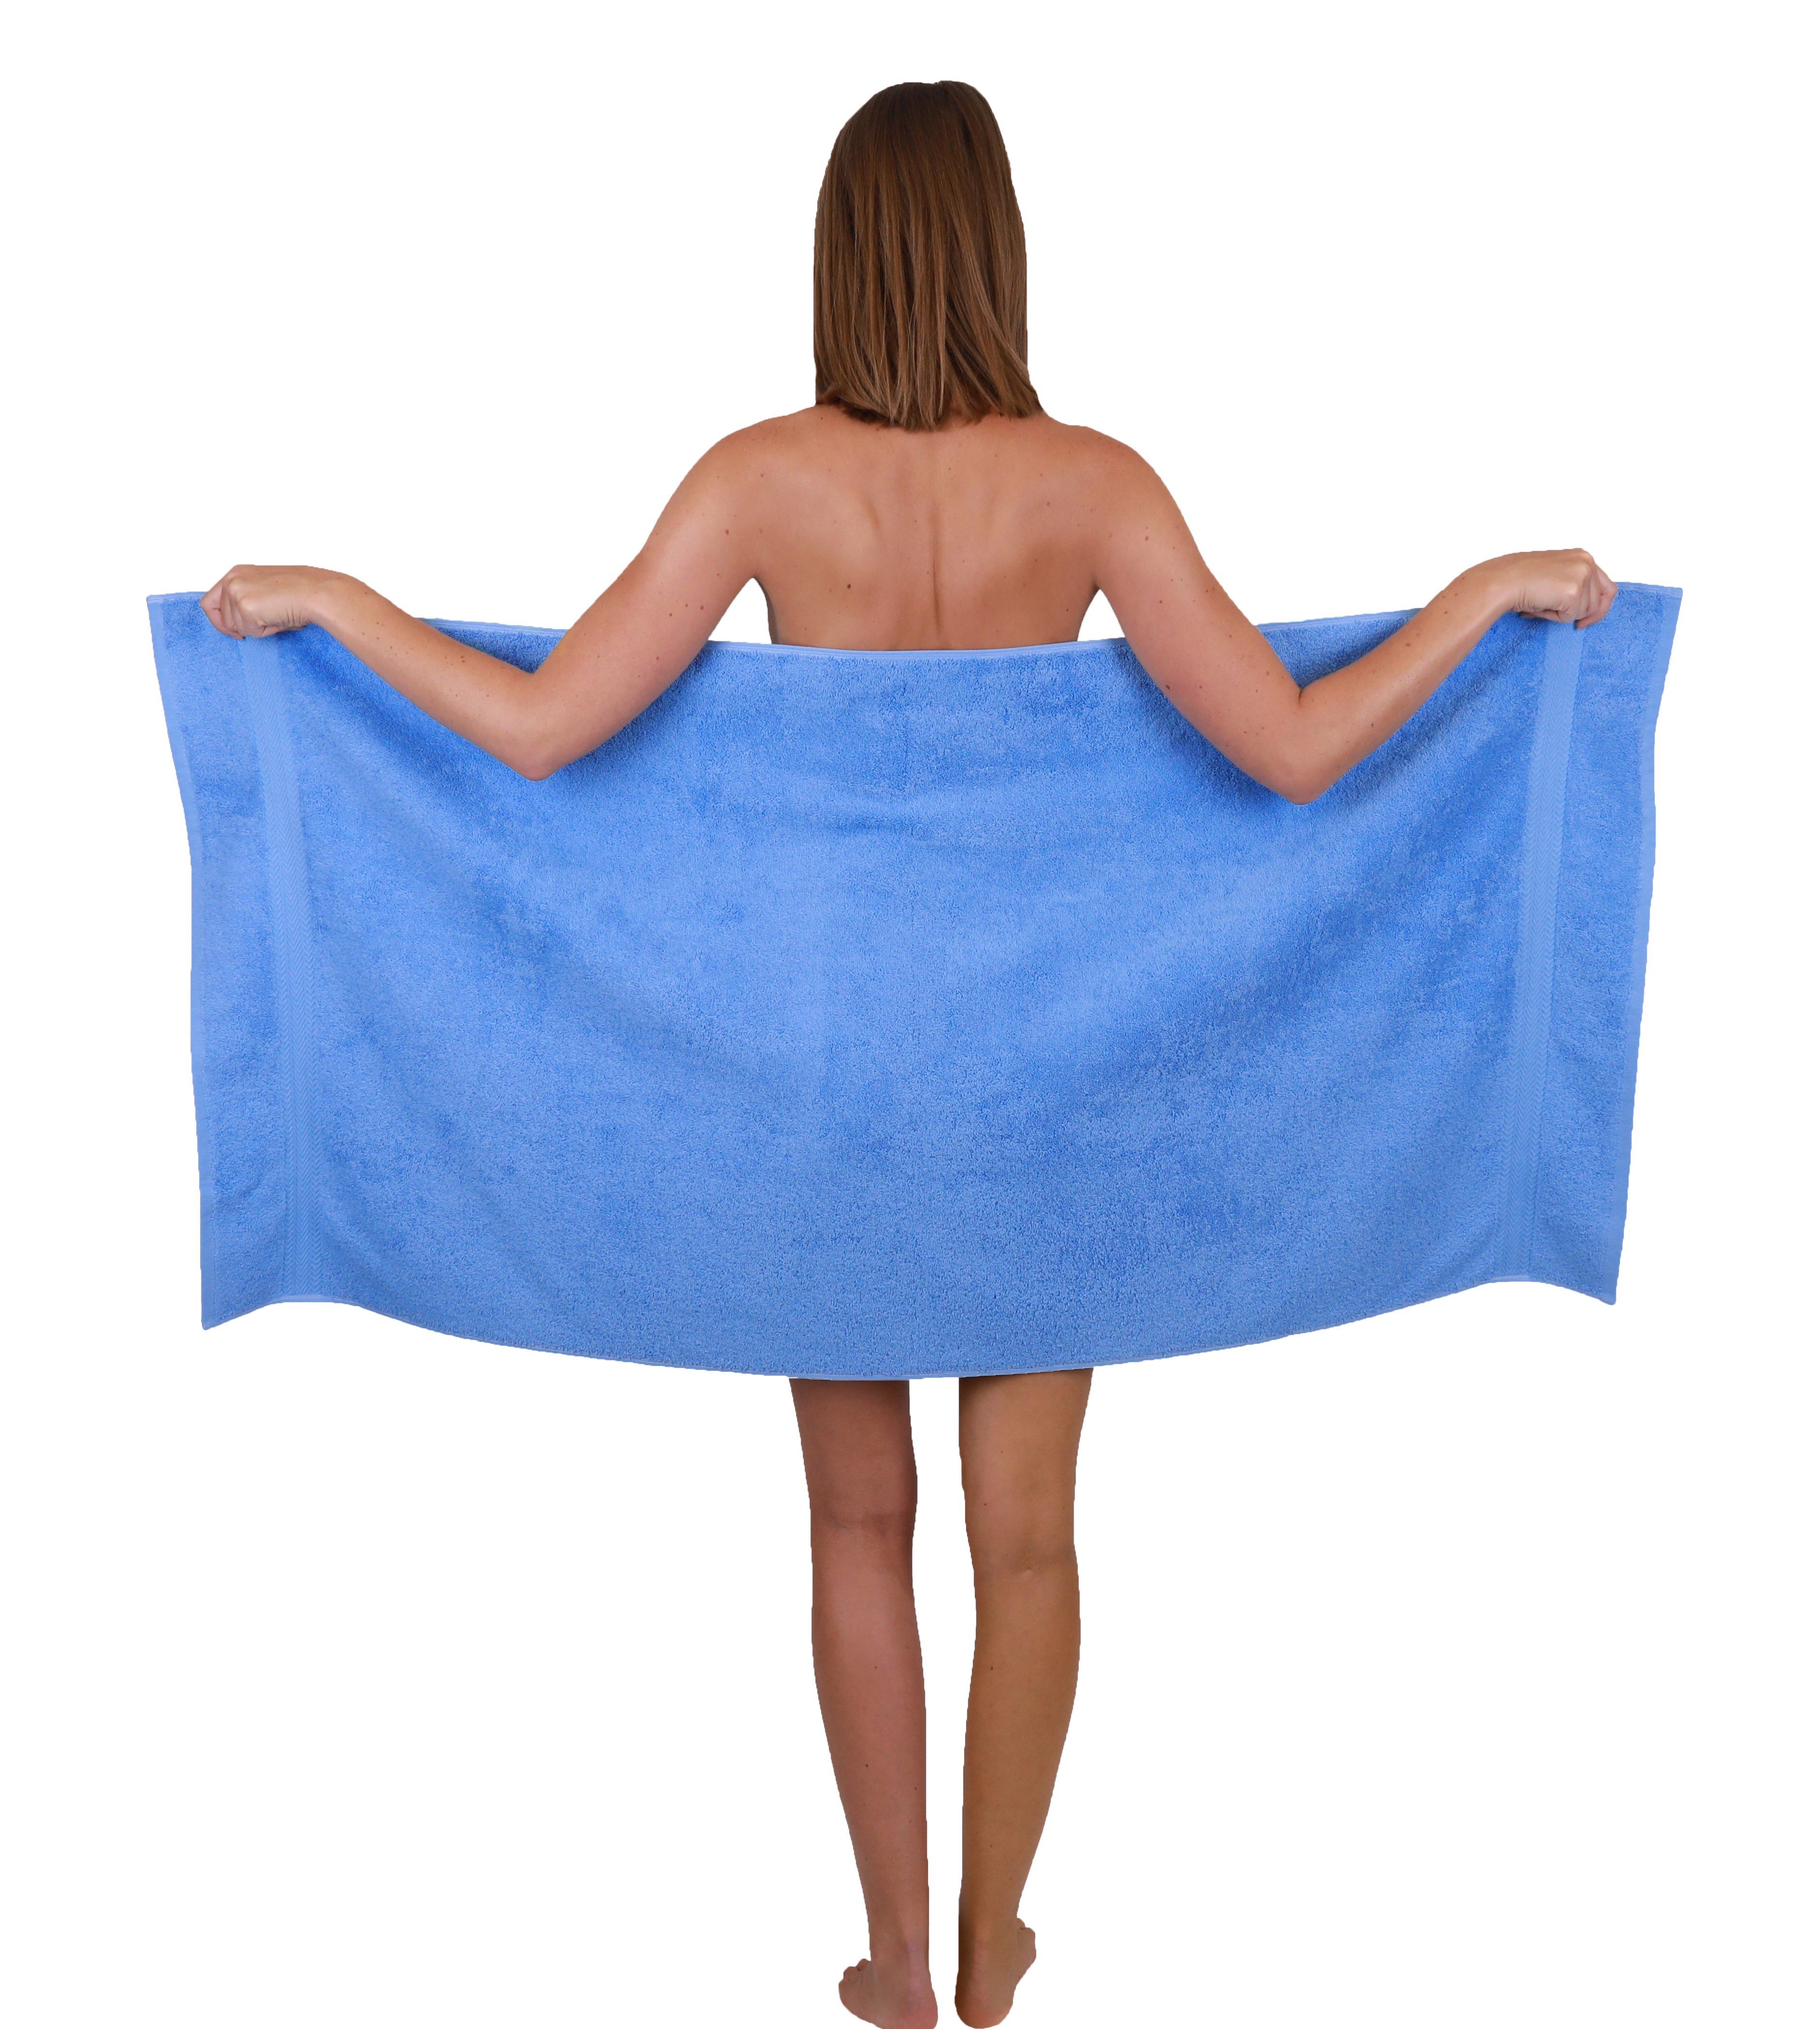 und Set Classic Baumwolle lila Betz Handtuch 100% Farbe 10-TLG. hellblau, Handtuch-Set